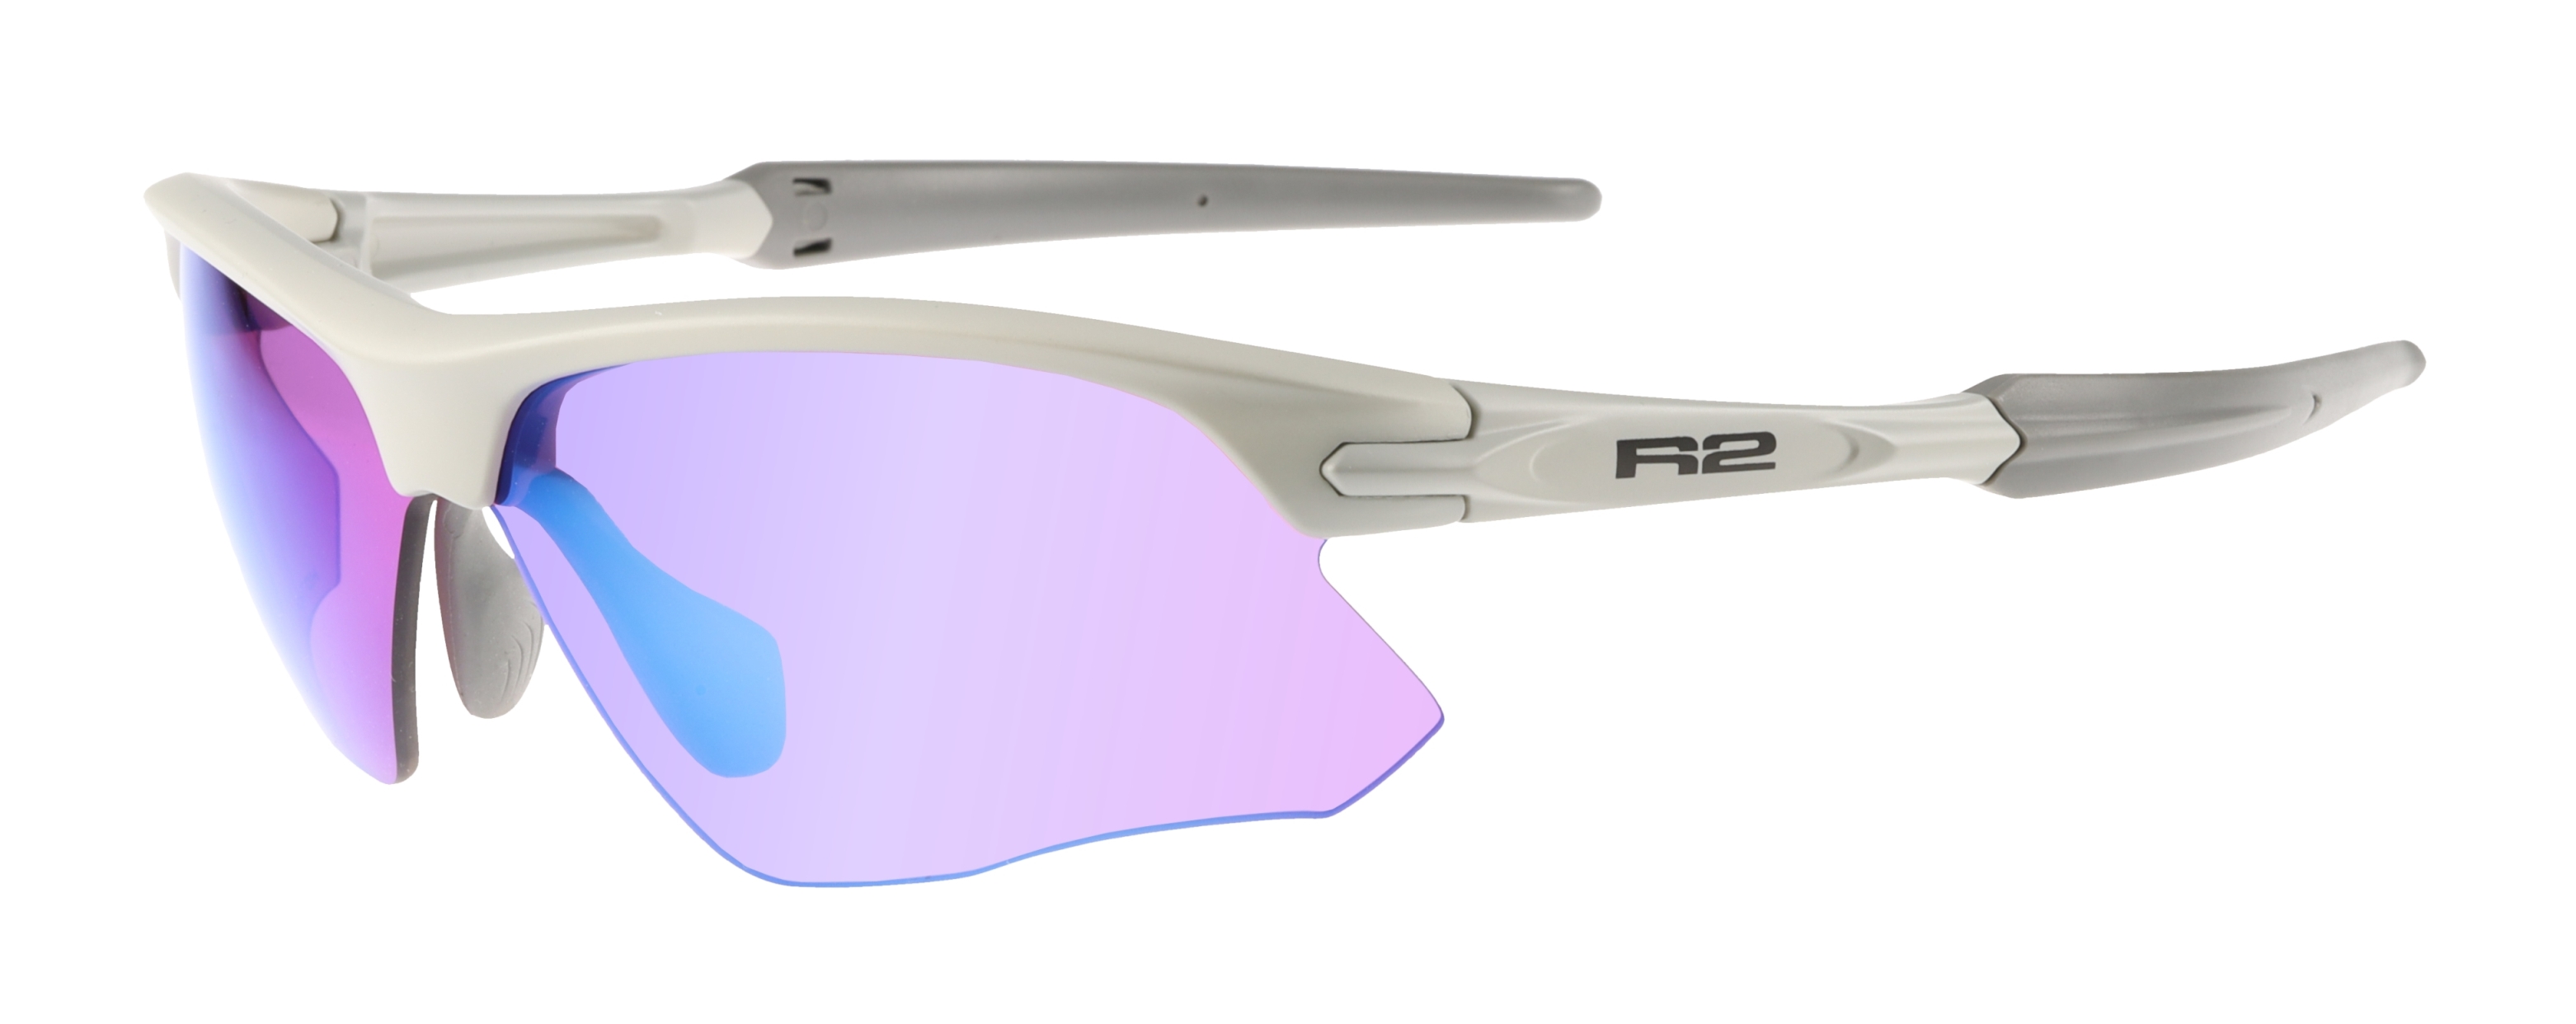 HD sport sunglasses R2 KICK AT109D